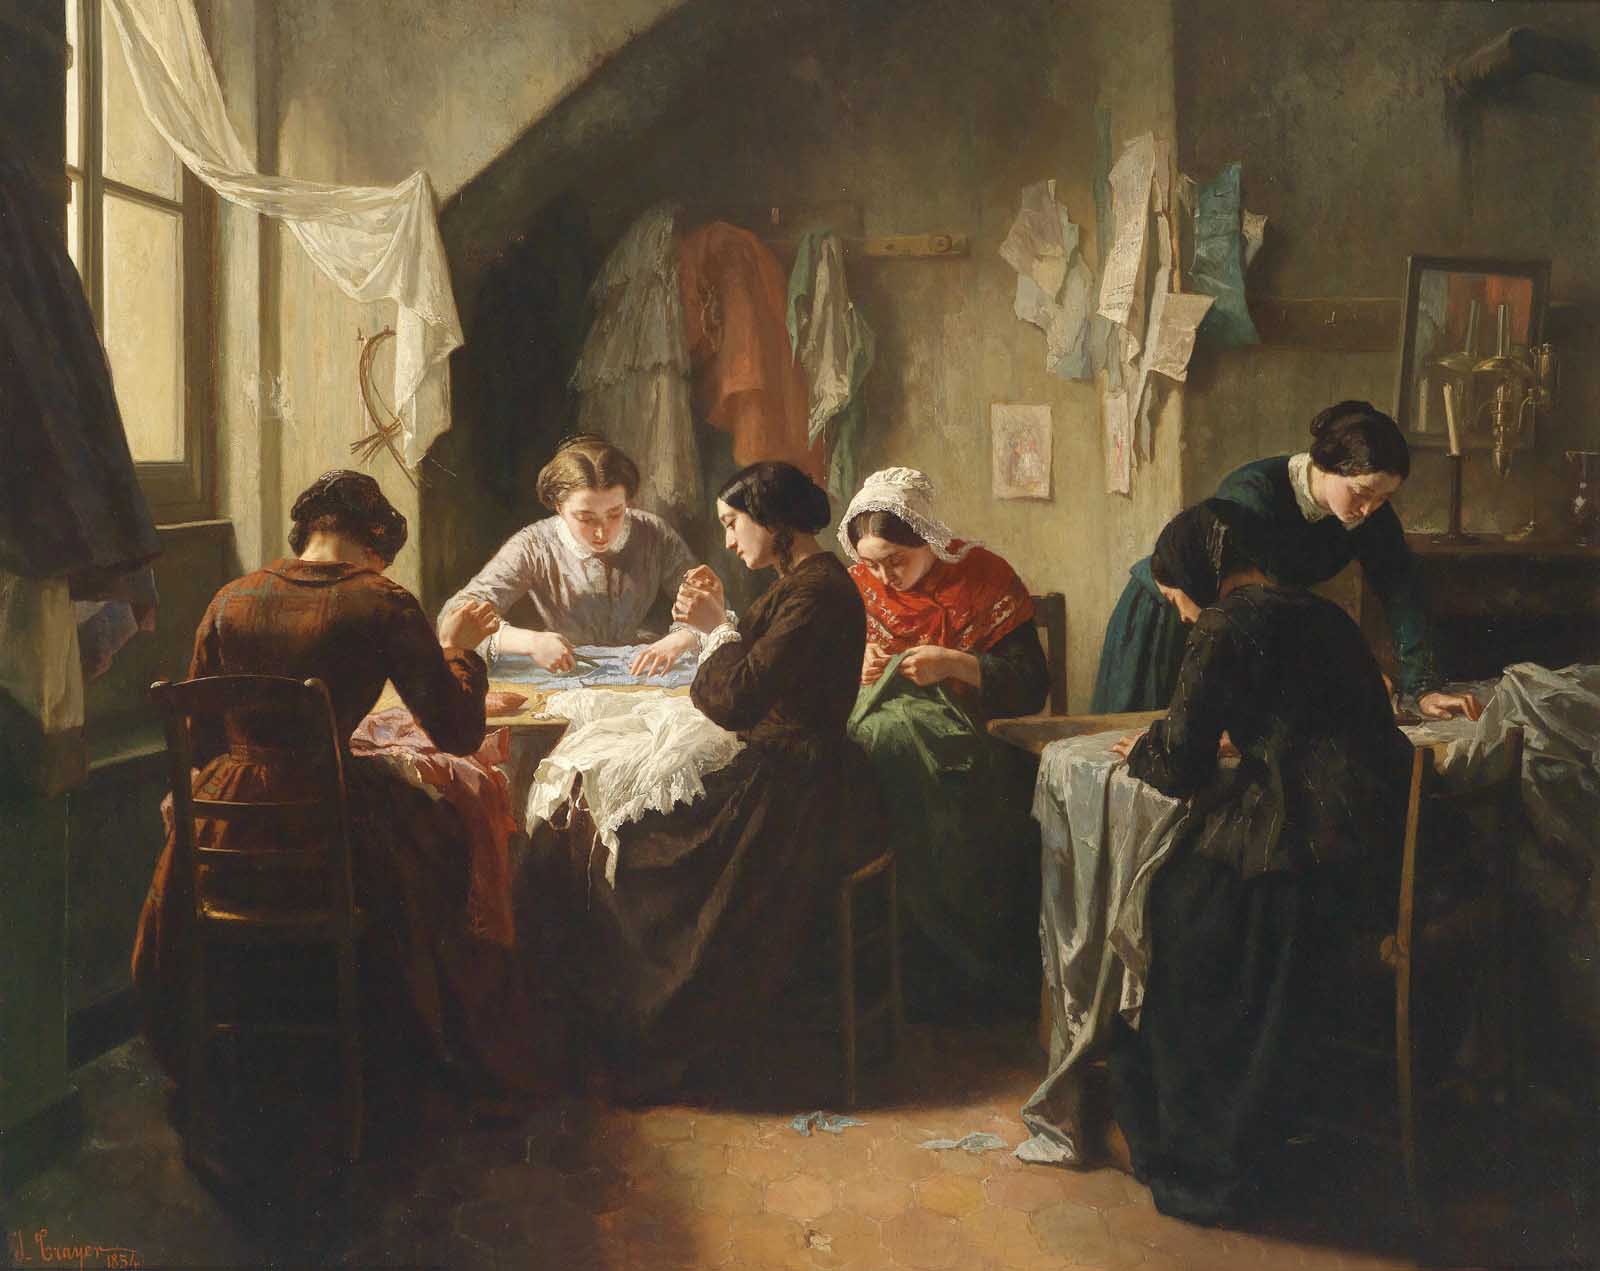 נשים תופרות ביד. איור משנת 1854 (איור: Jean Baptiste Jules Trayer)